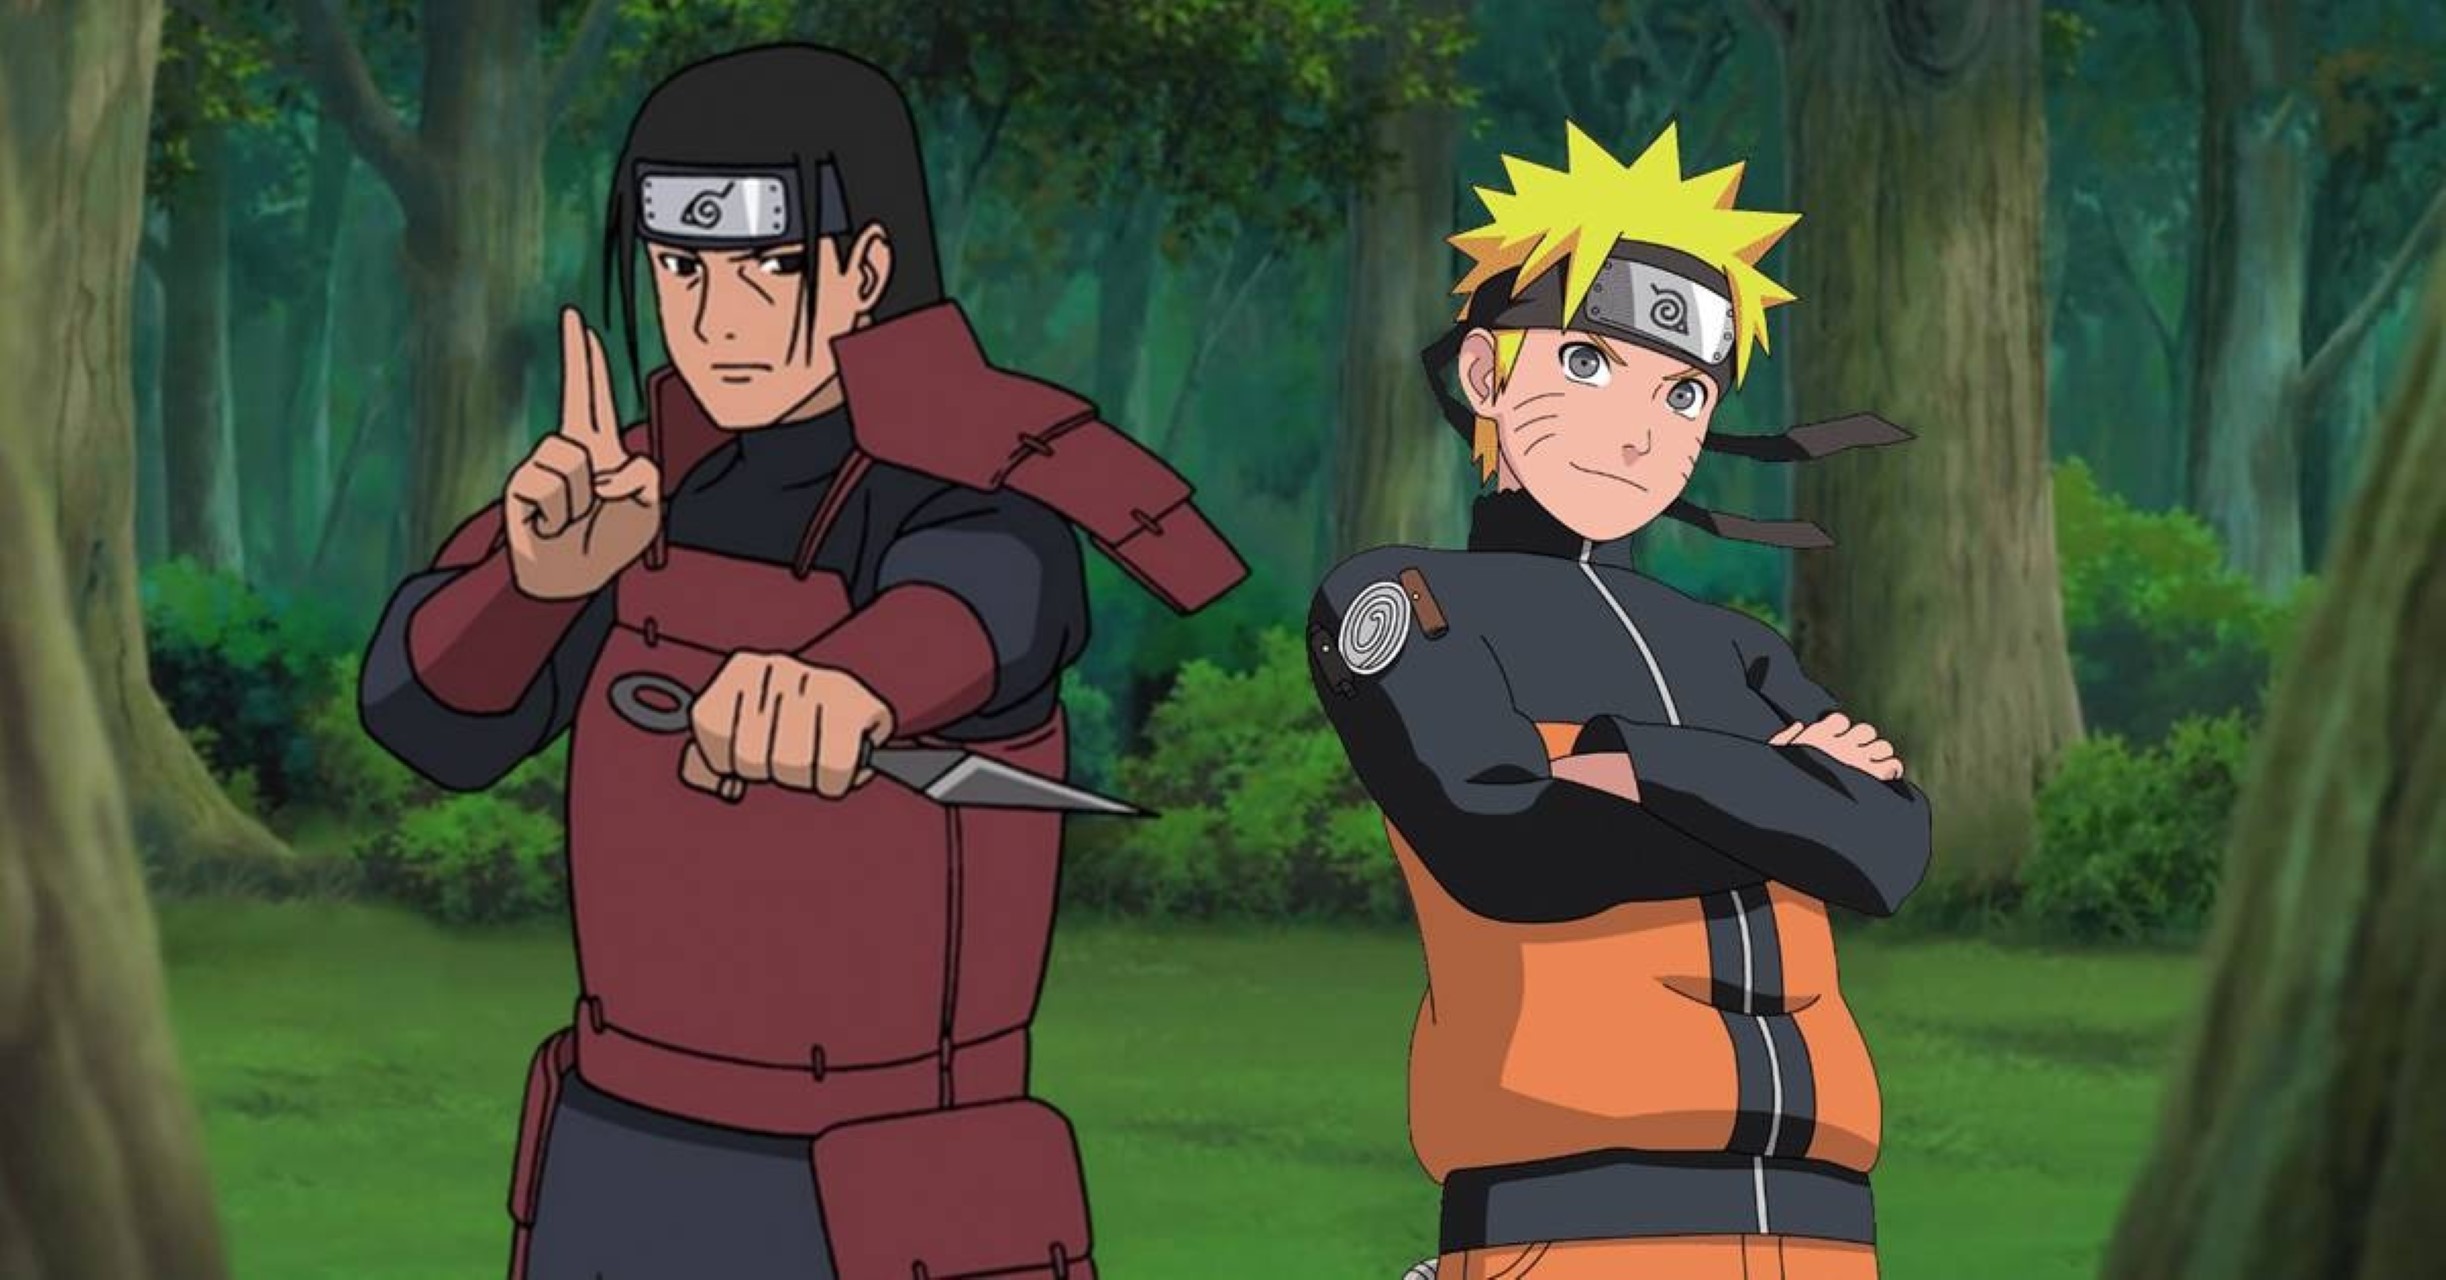 Entre Hashirama e Naruto, quem possui maior quantidade de chakra?